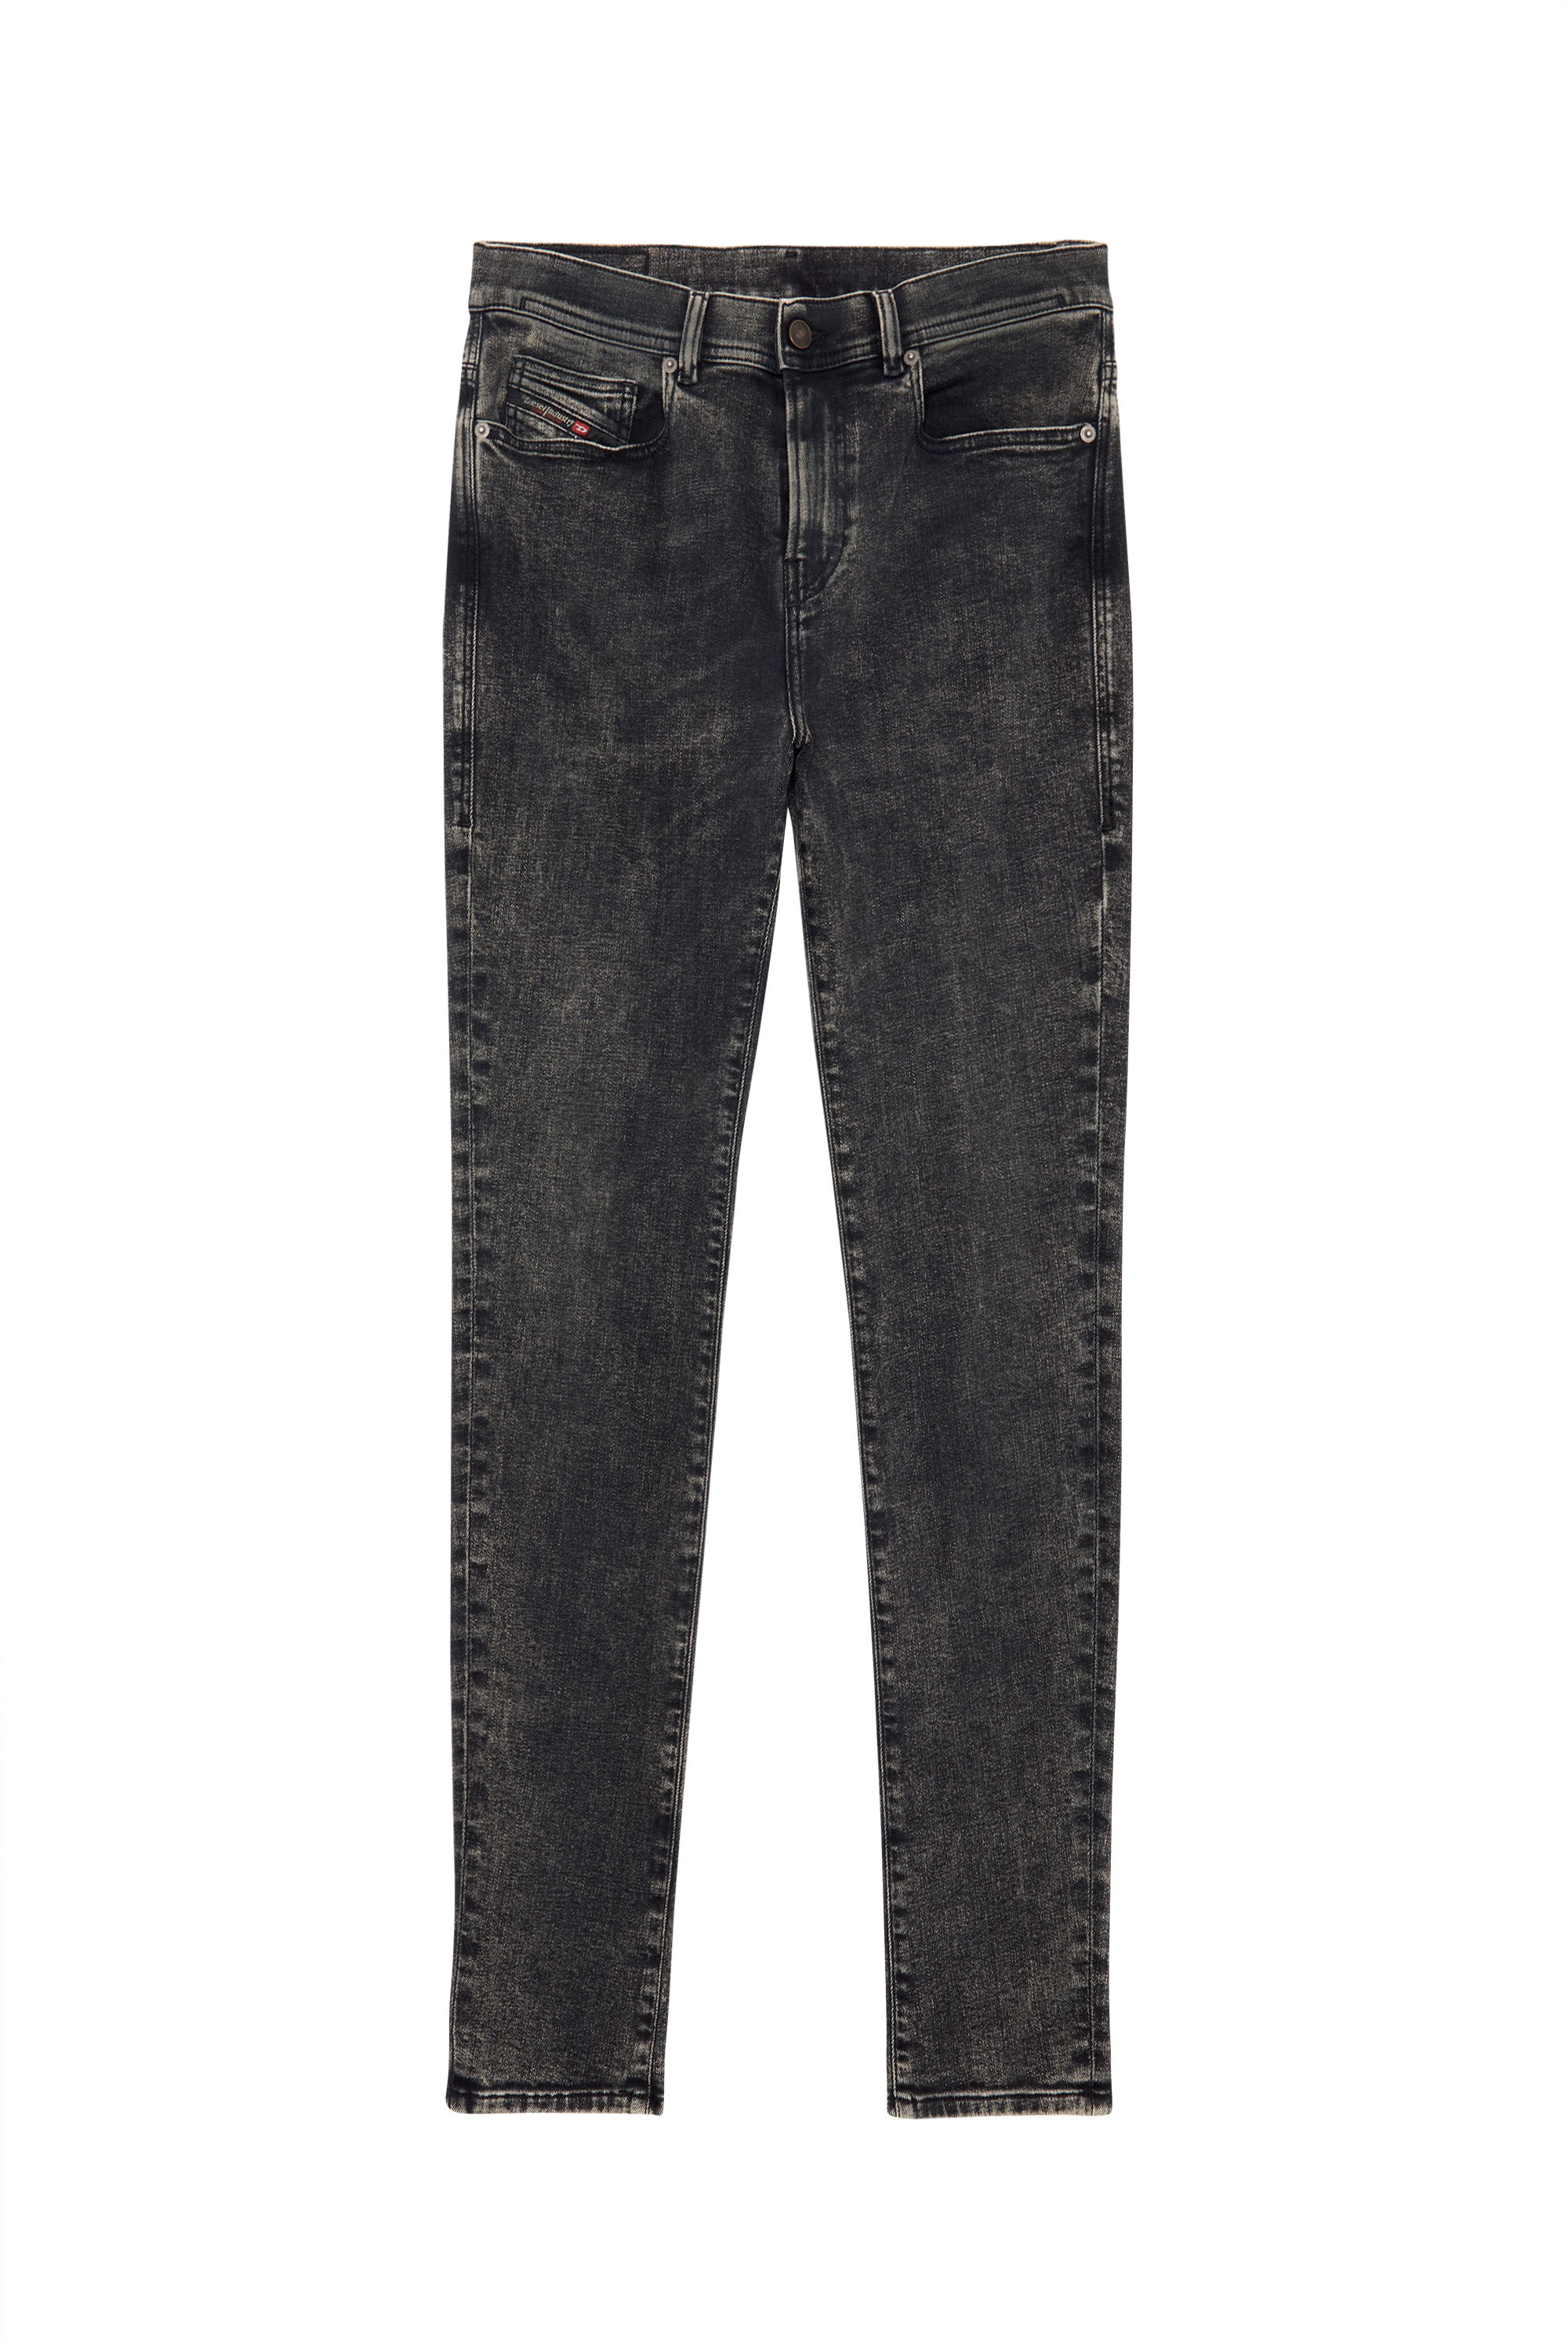 Diesel - Skinny Jeans 1983 D-Amny 09C22,  - Image 6